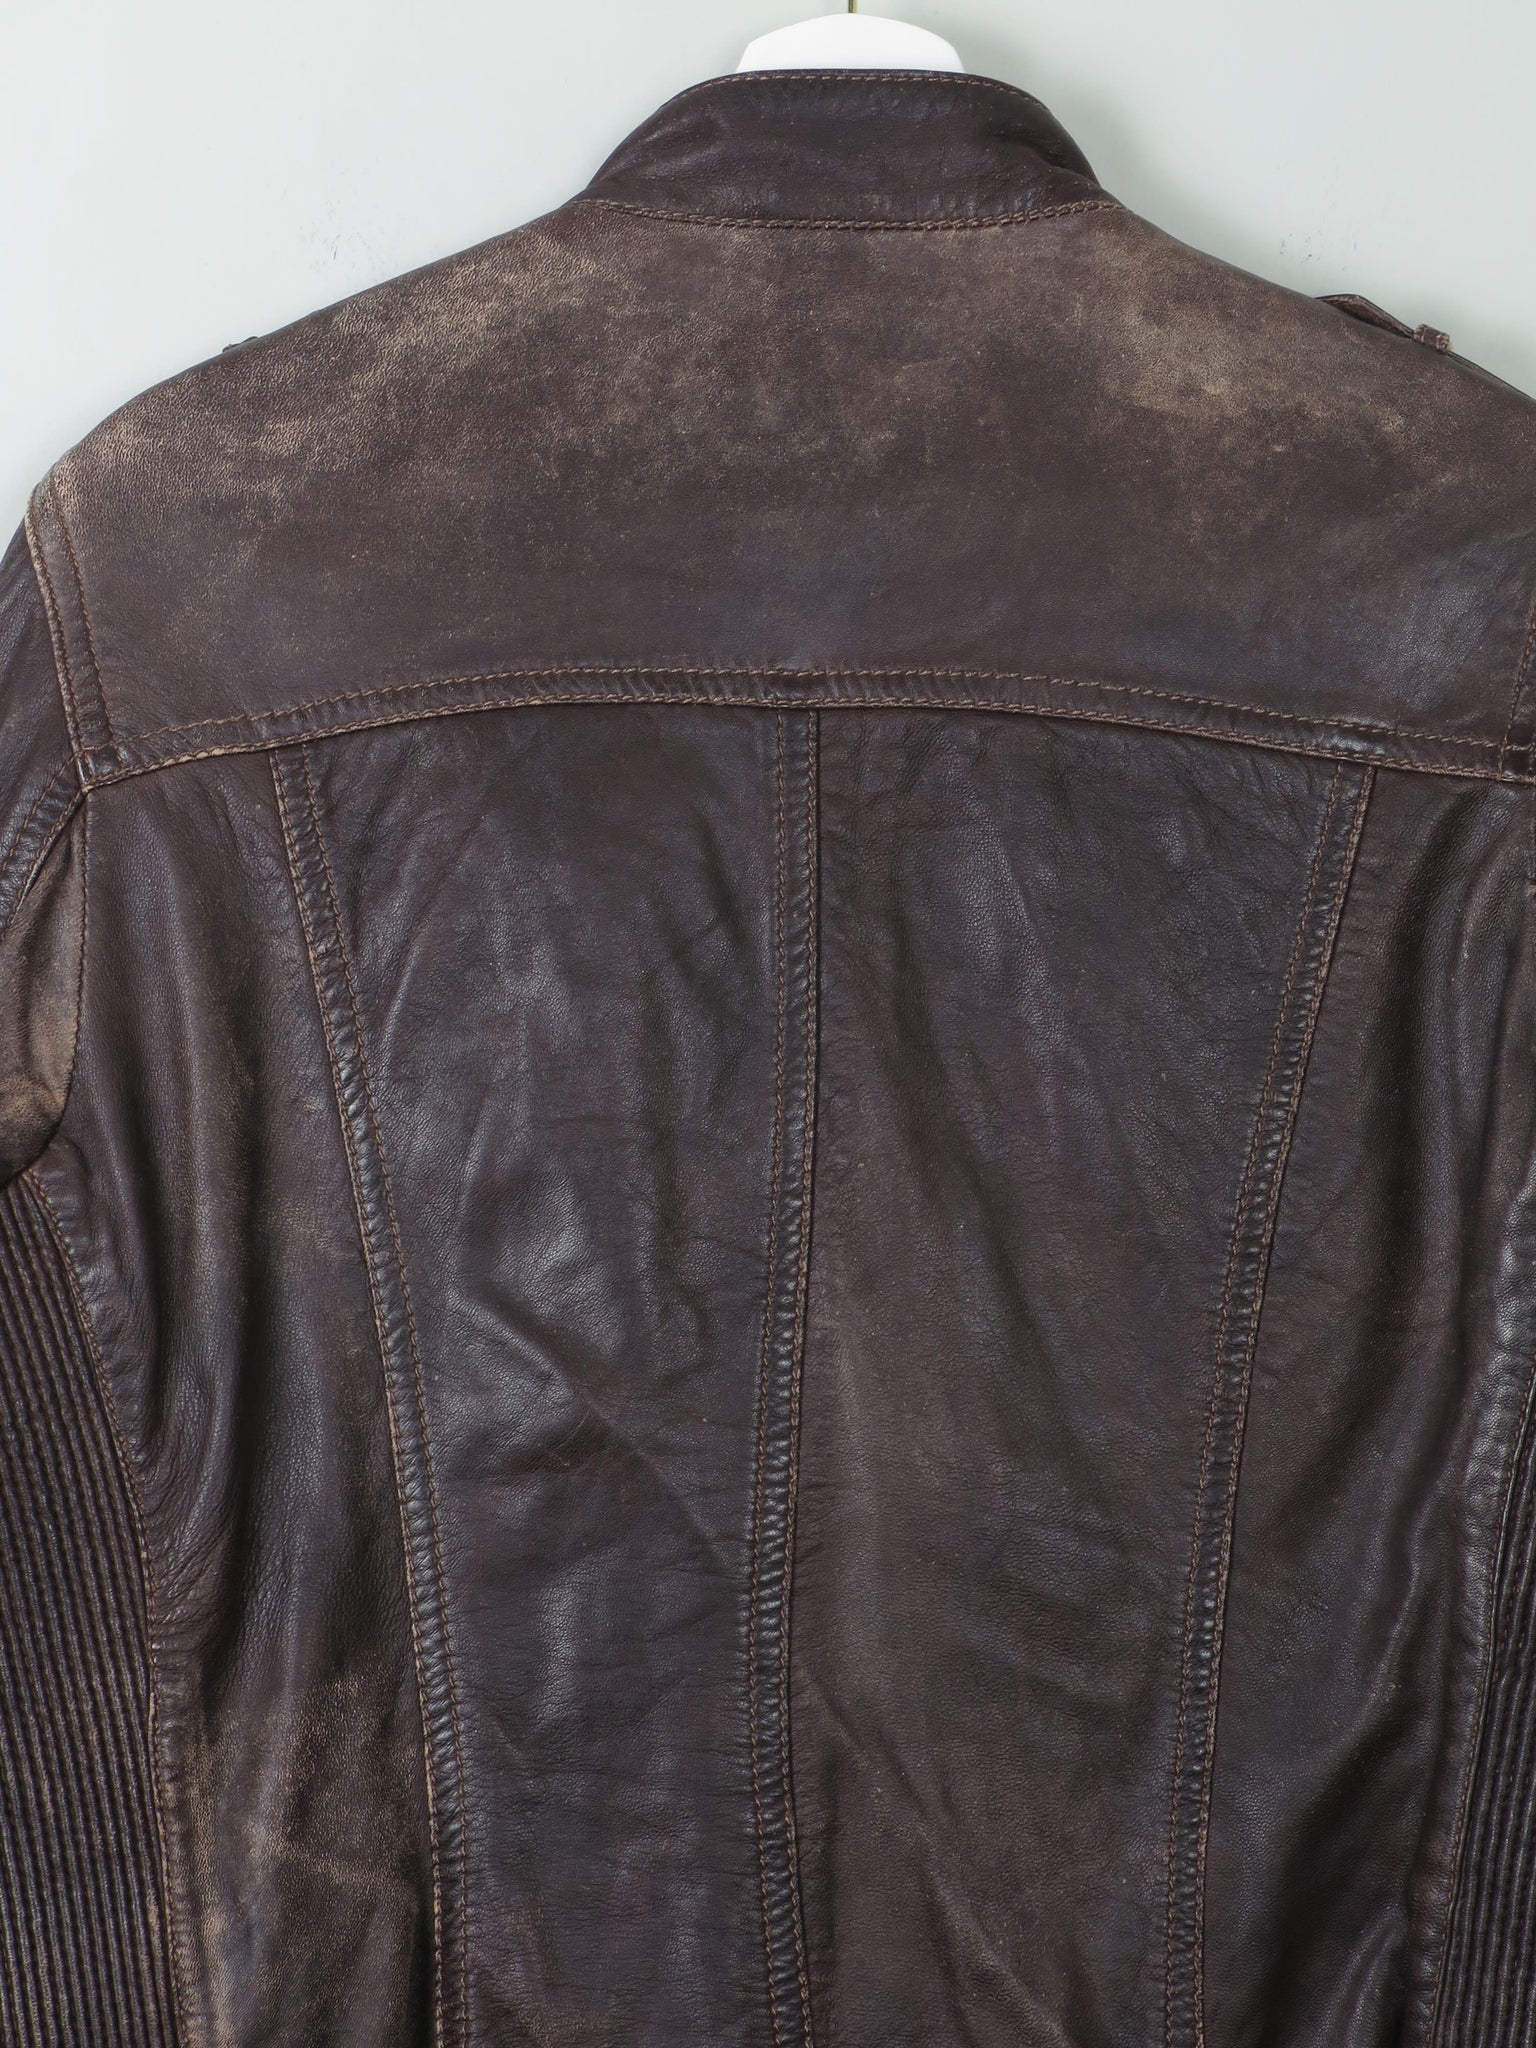 Women's Vintage Brown Leather Biker Jacket L - The Harlequin